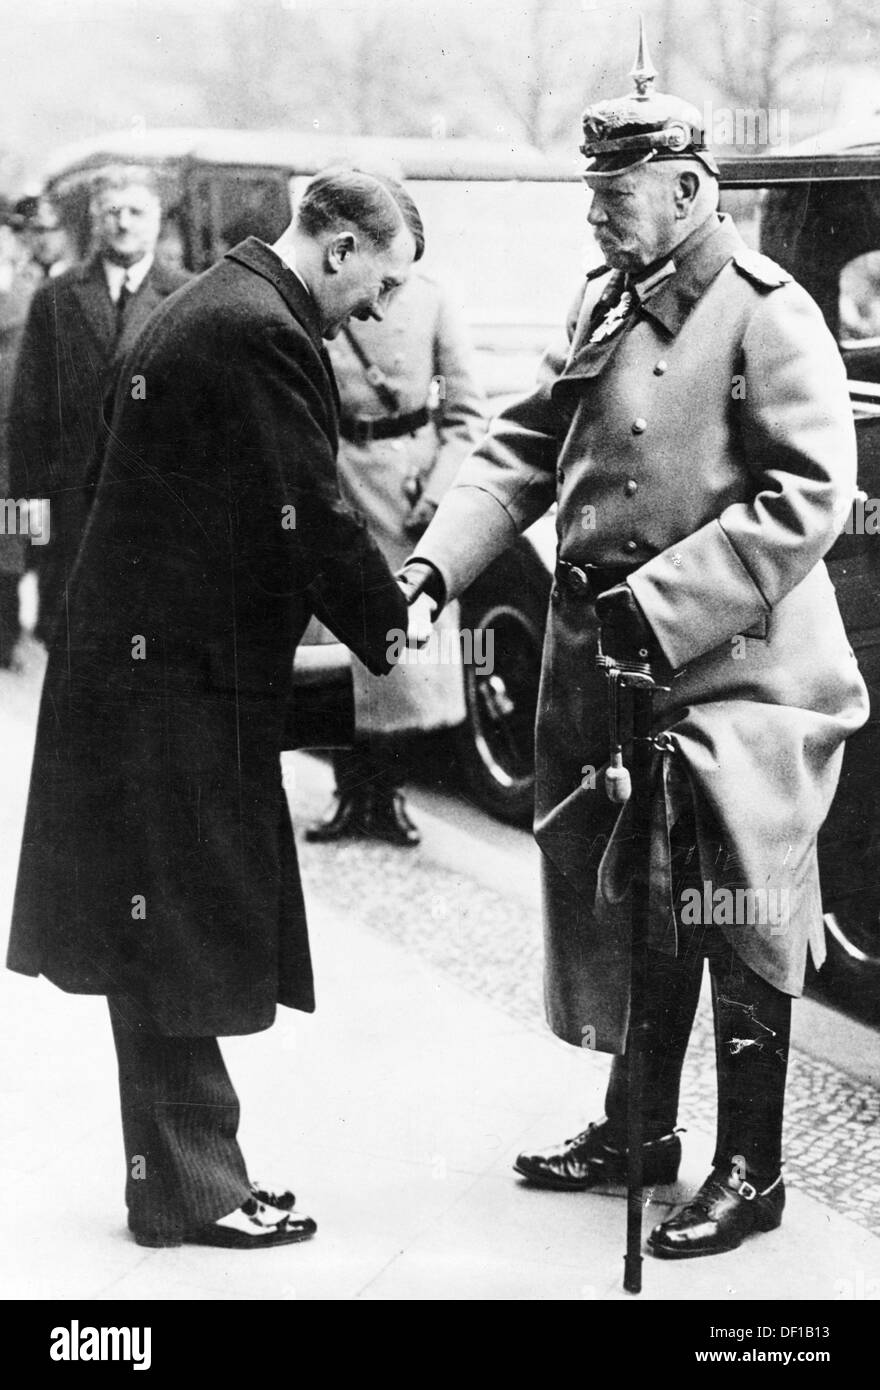 L'image de la propagande nazie! Spectacles Adolf Hitler saluez le Président du Reich Paul von Hindenburg devant l'Opéra d'Etat de Berlin, en Allemagne, à l'occasion de la Heldengedenktag (Journée de commémoration des héros) le 25 février 1934. Fotoarchiv für Zeitgeschichte Banque D'Images